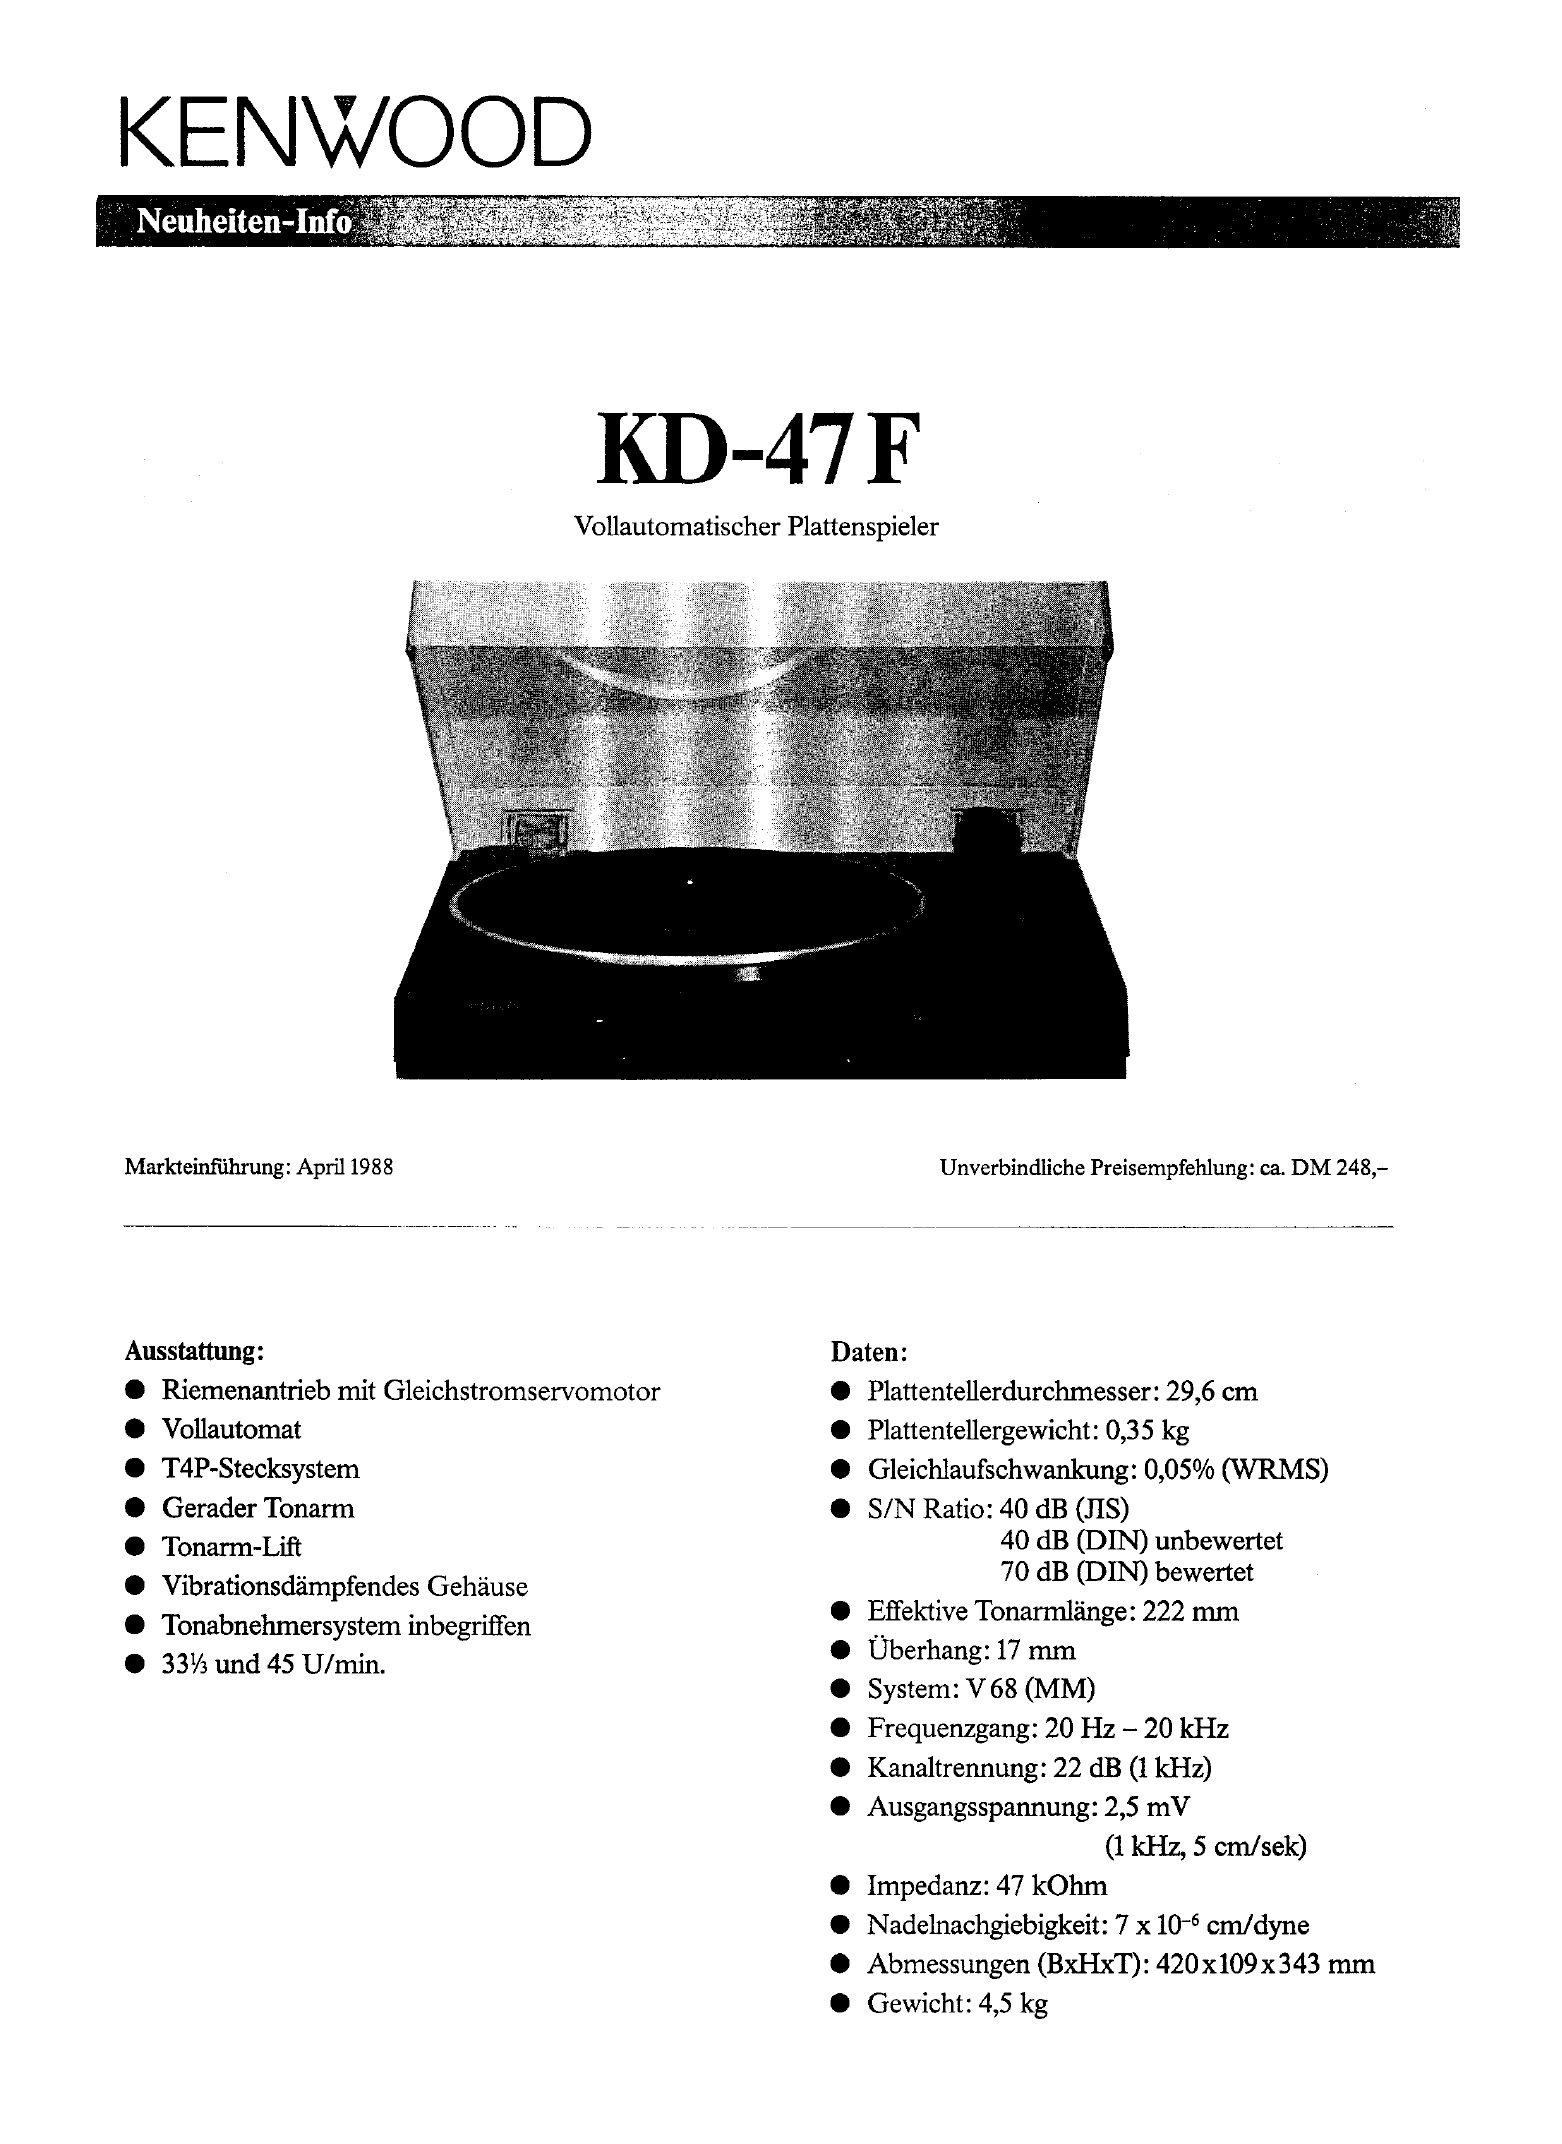 Kenwood KD-47 F-Prospekt-1988.jpg